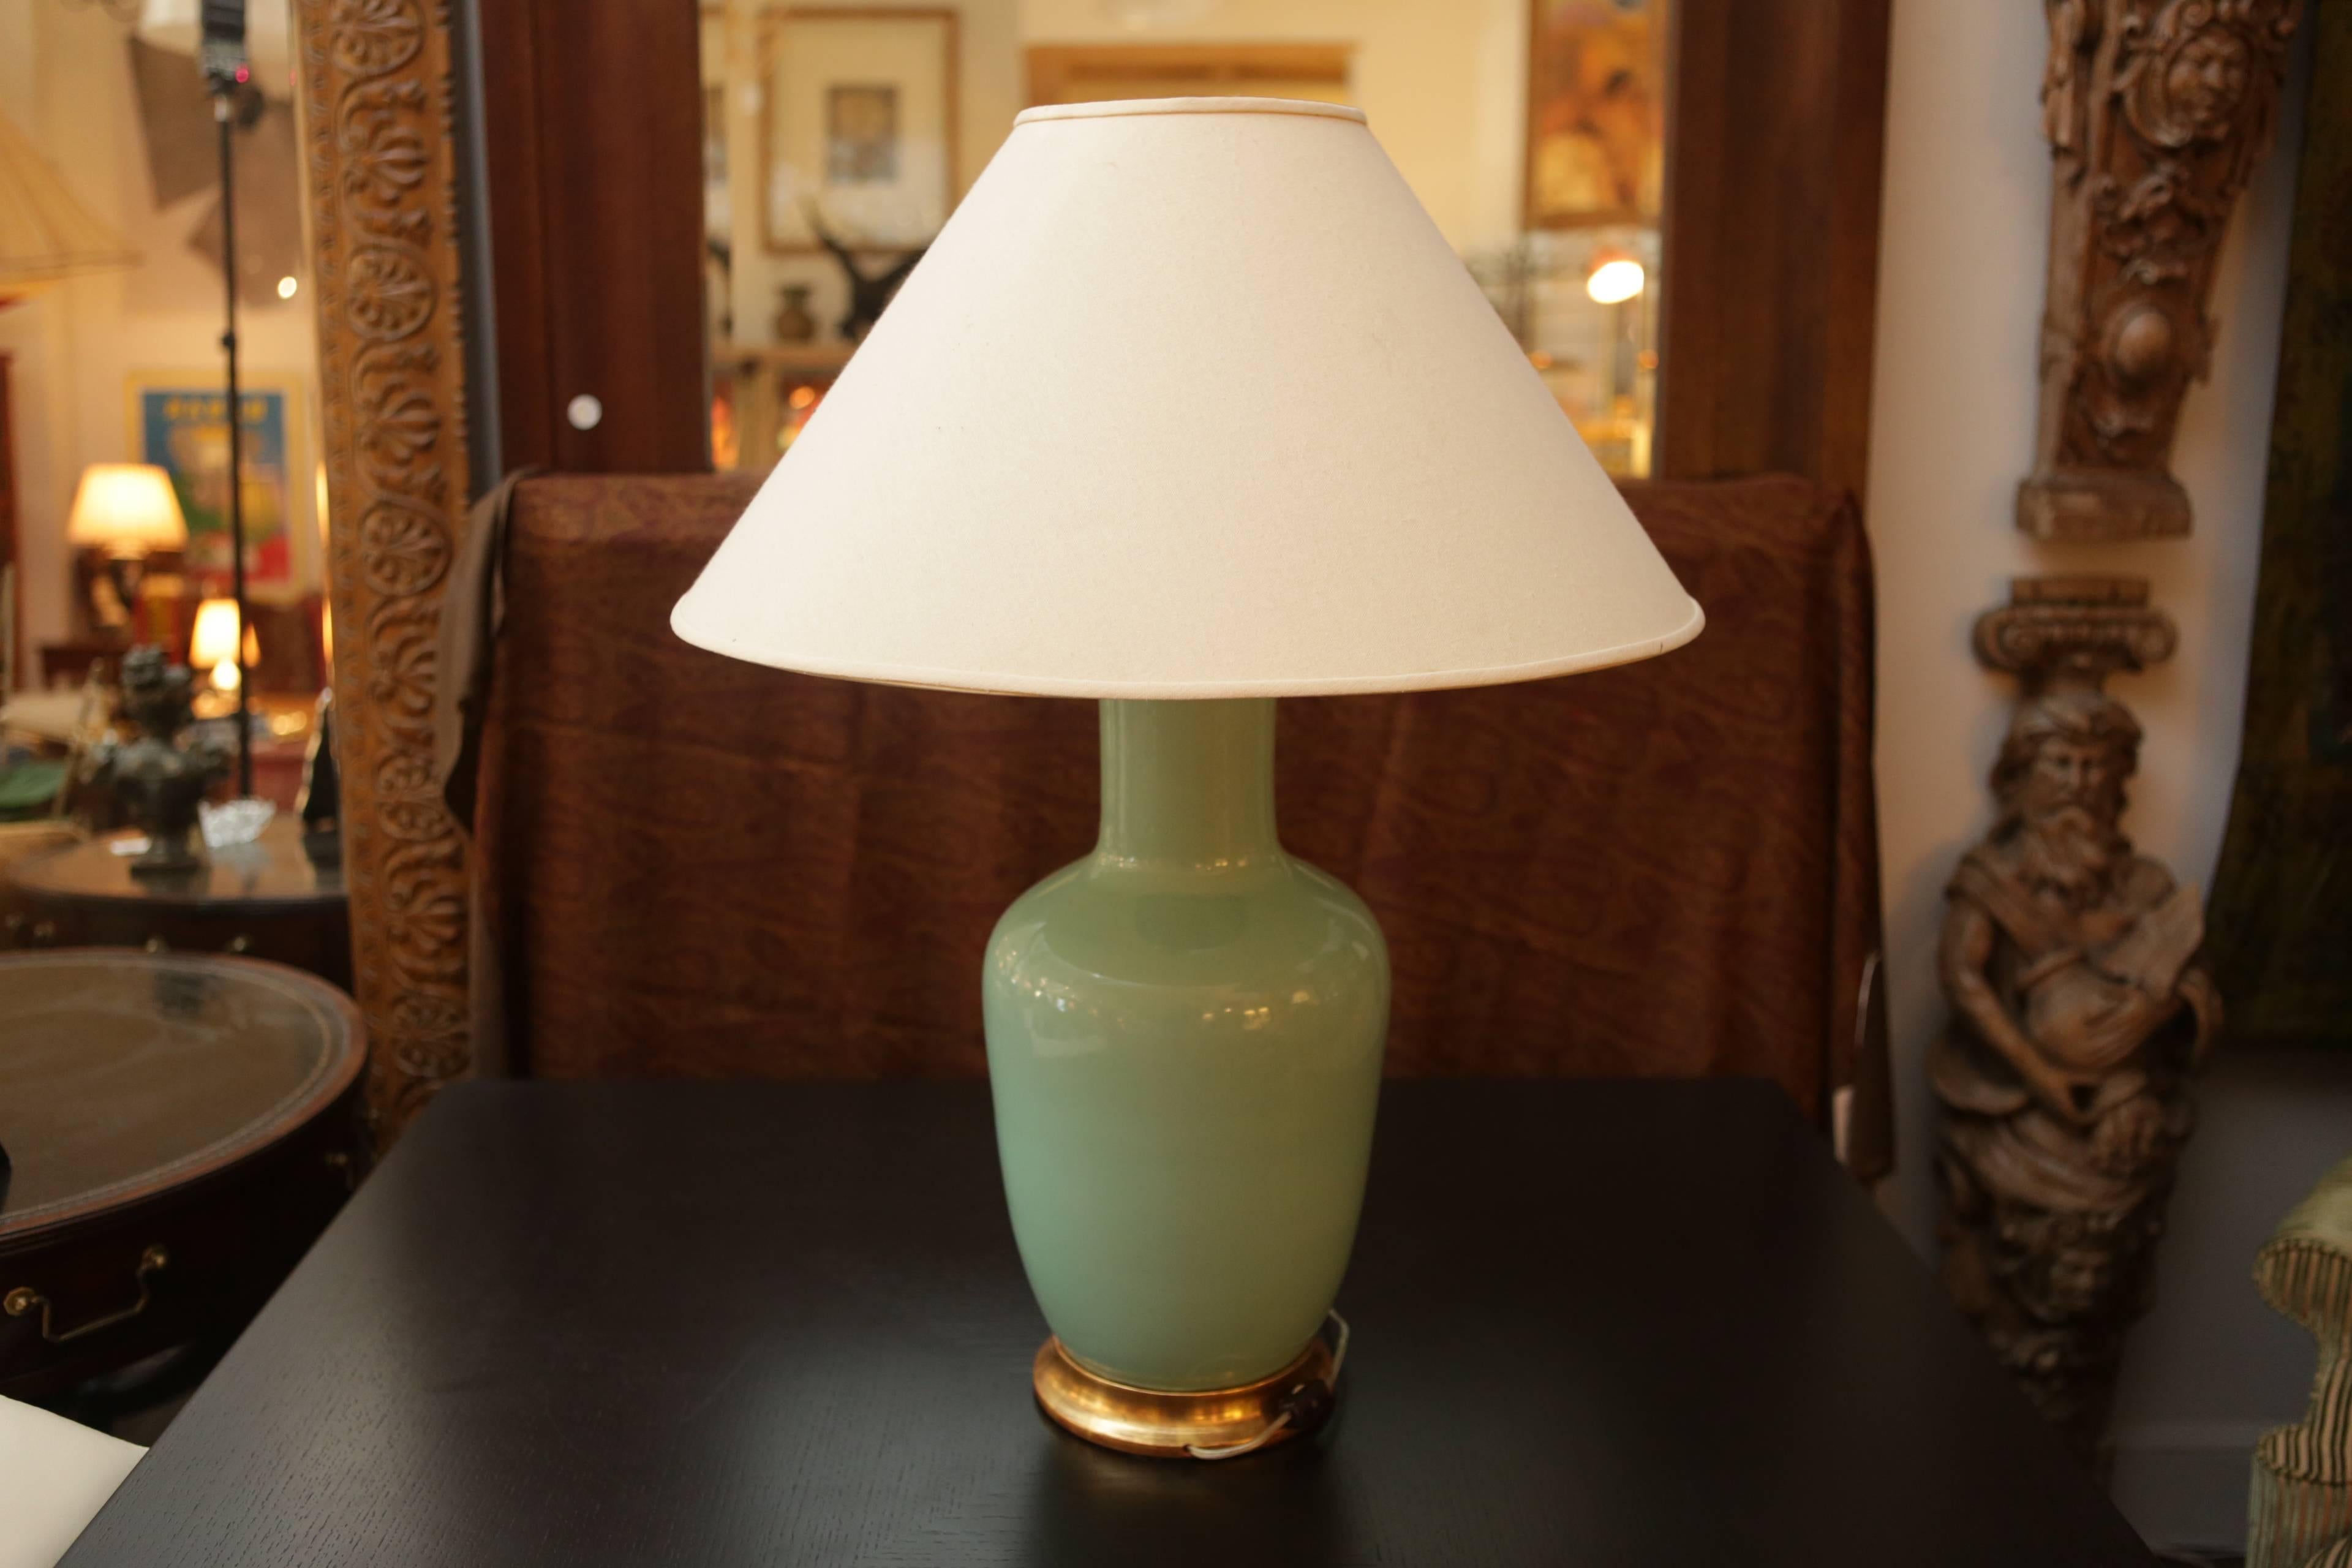 Ceramic Christopher Spitzmiller Celadon Ginger Jar Lamp